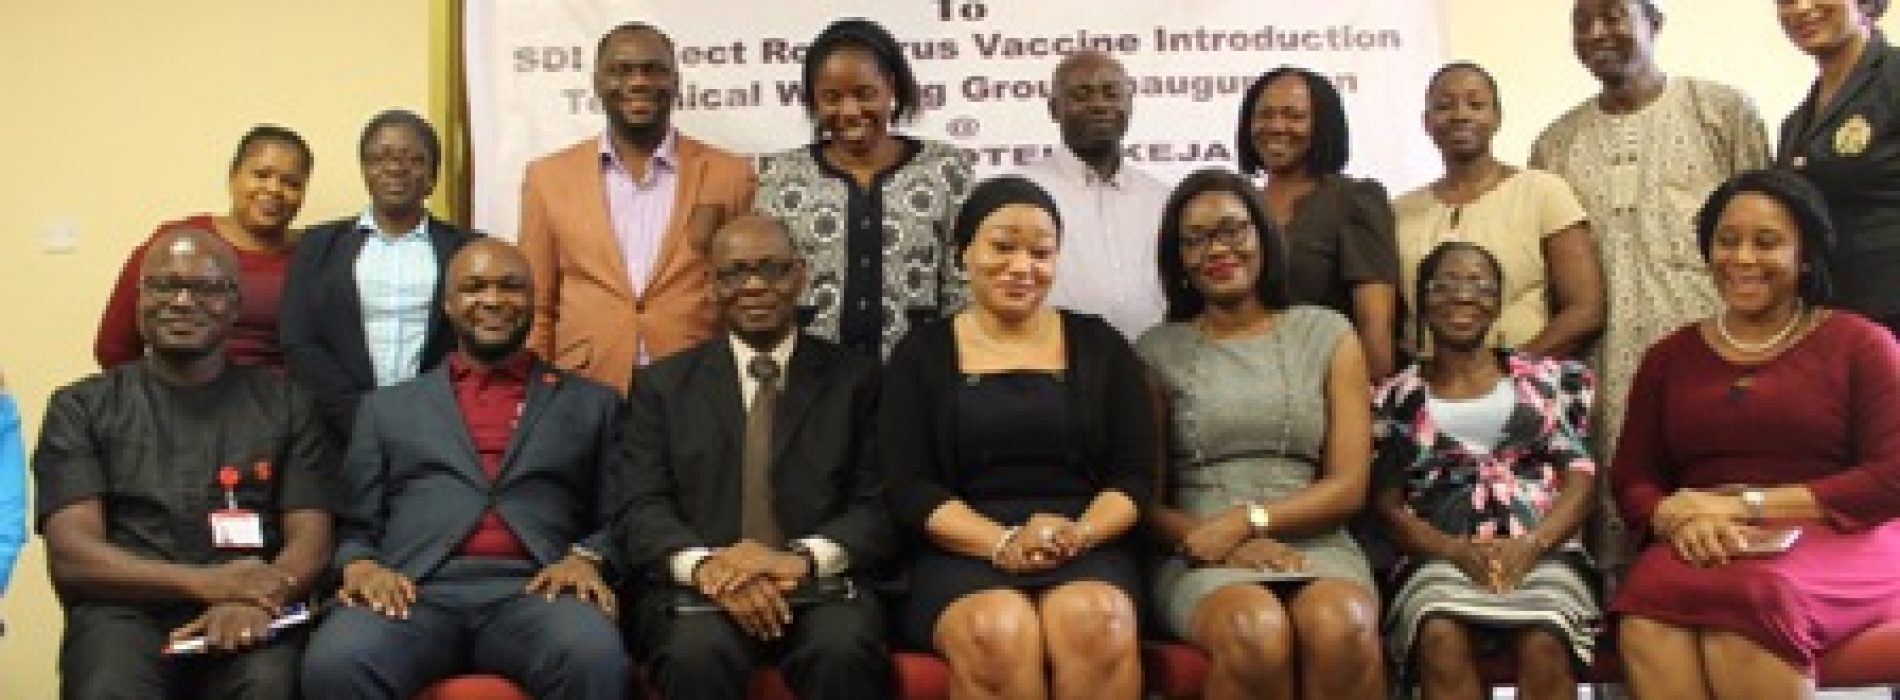 Nigeria introduces rotavirus vaccine